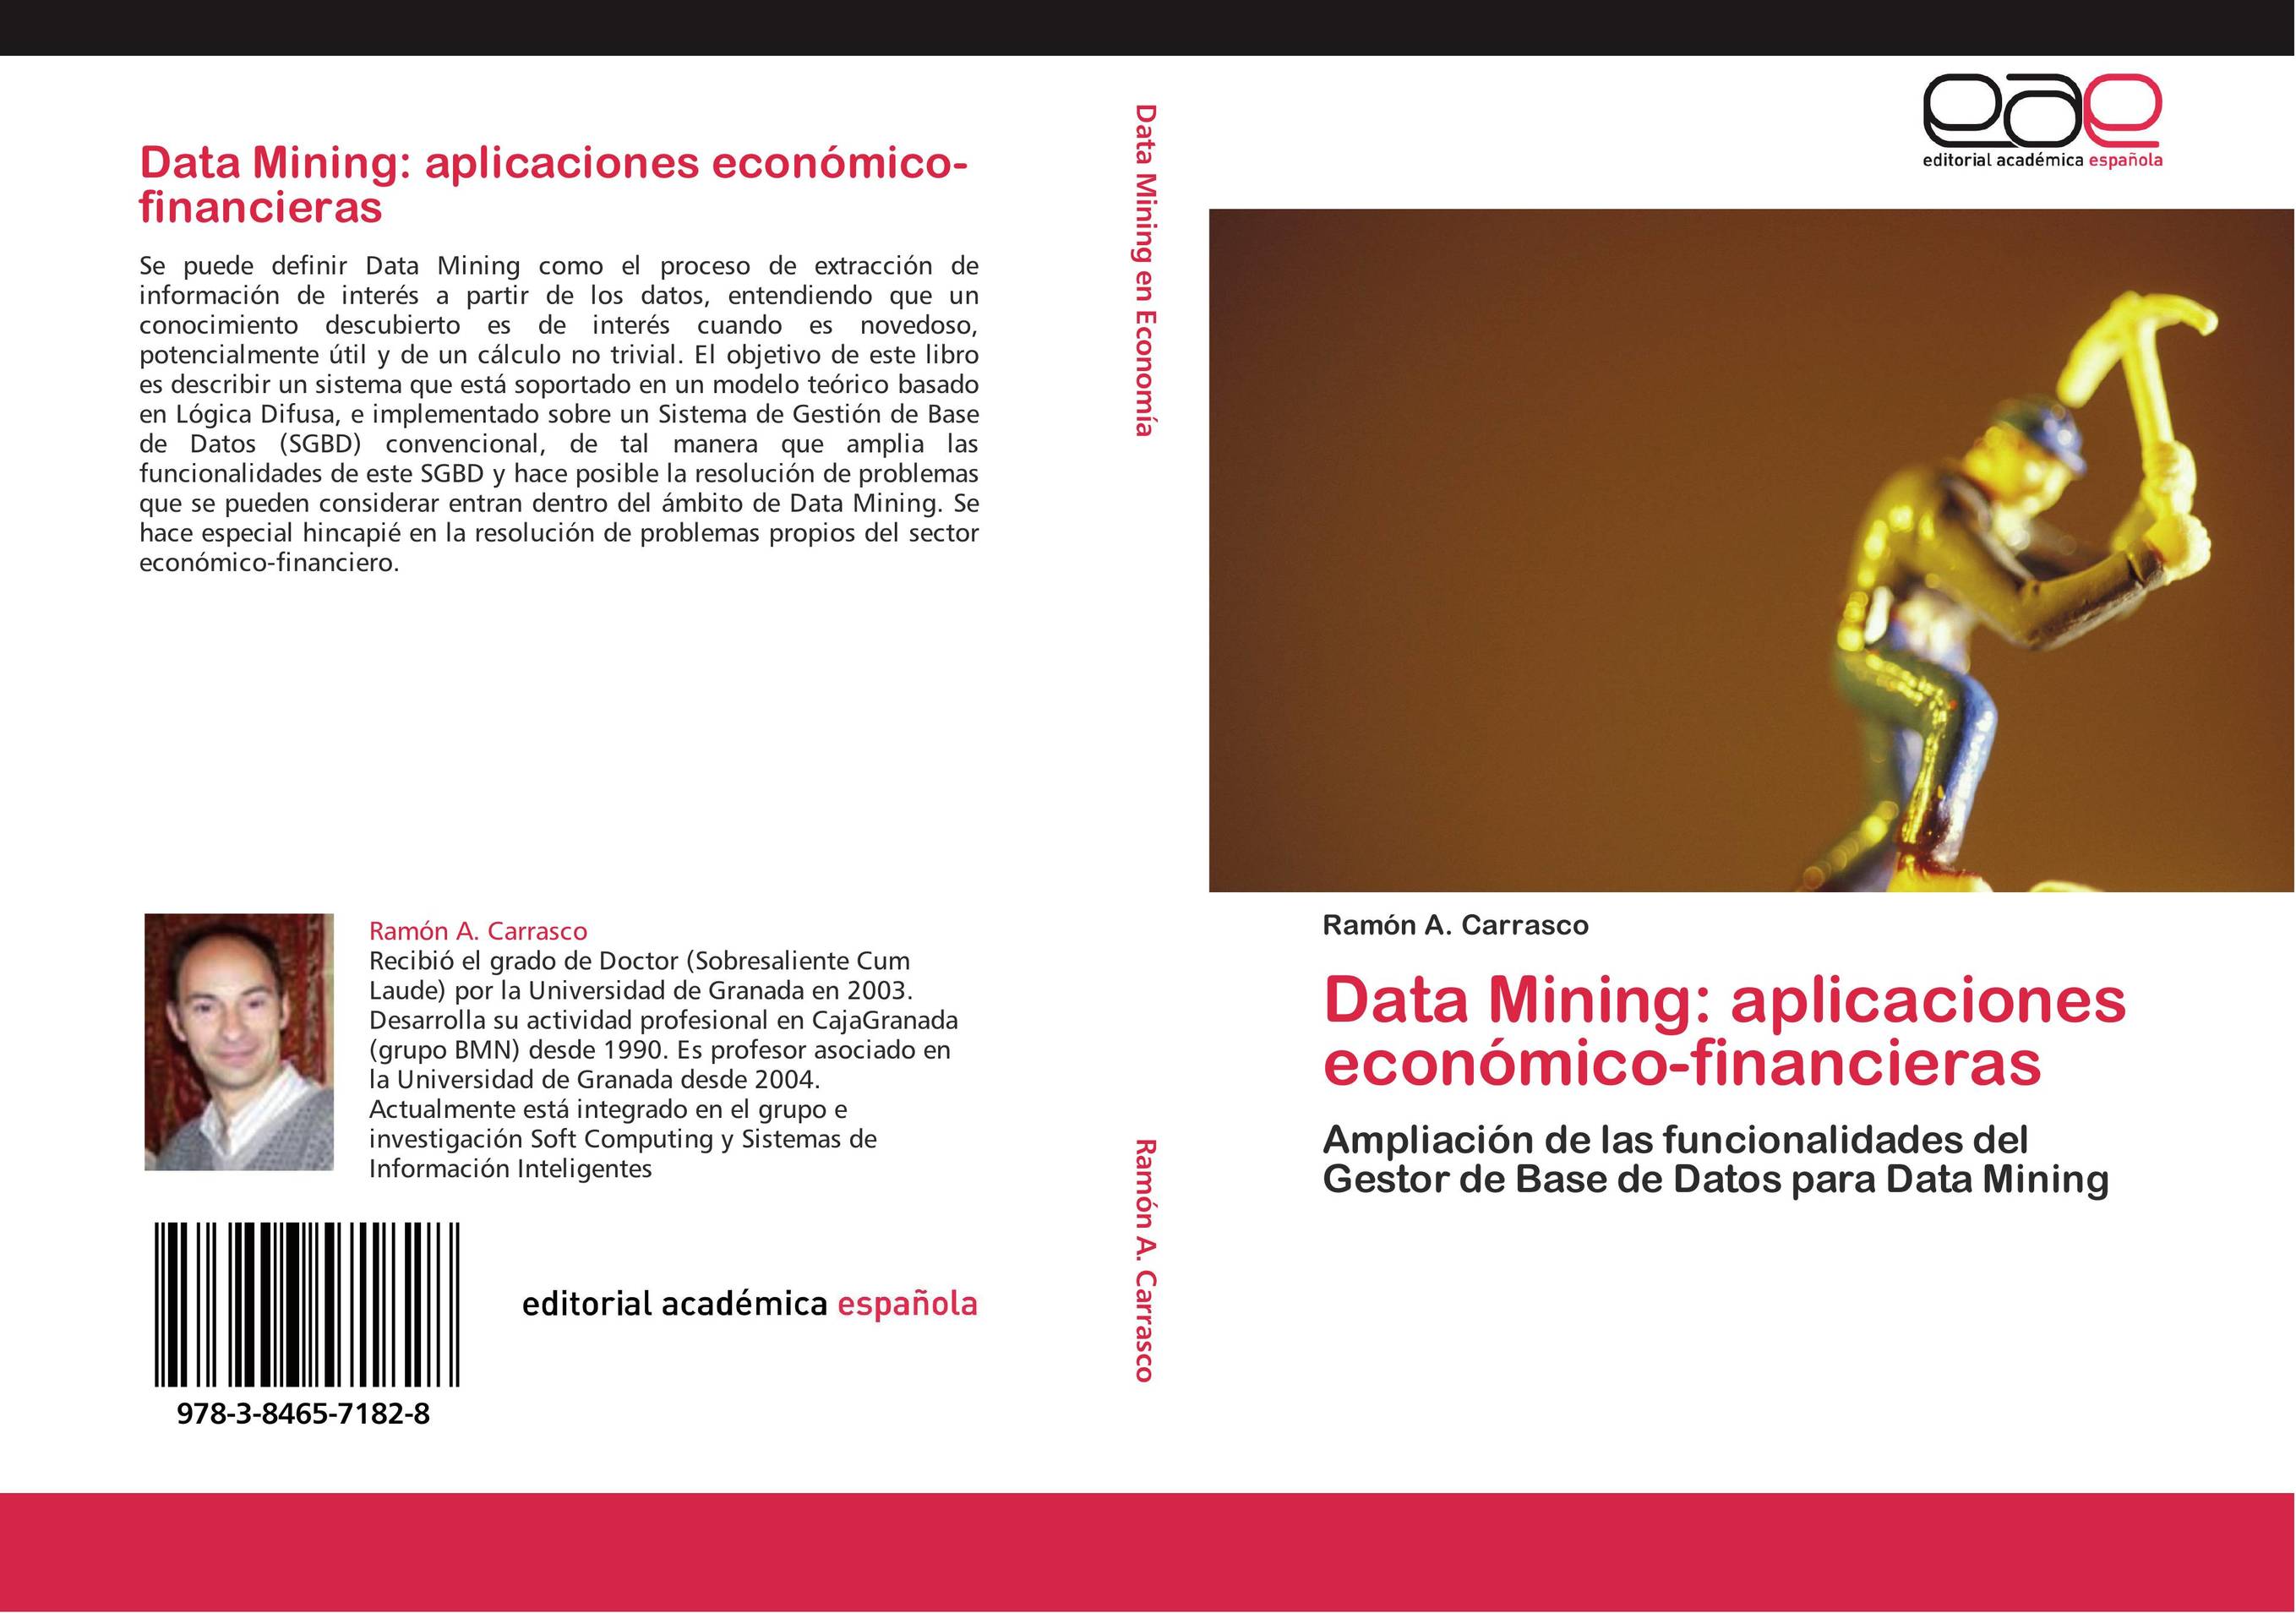 Data Mining: aplicaciones económico-financieras